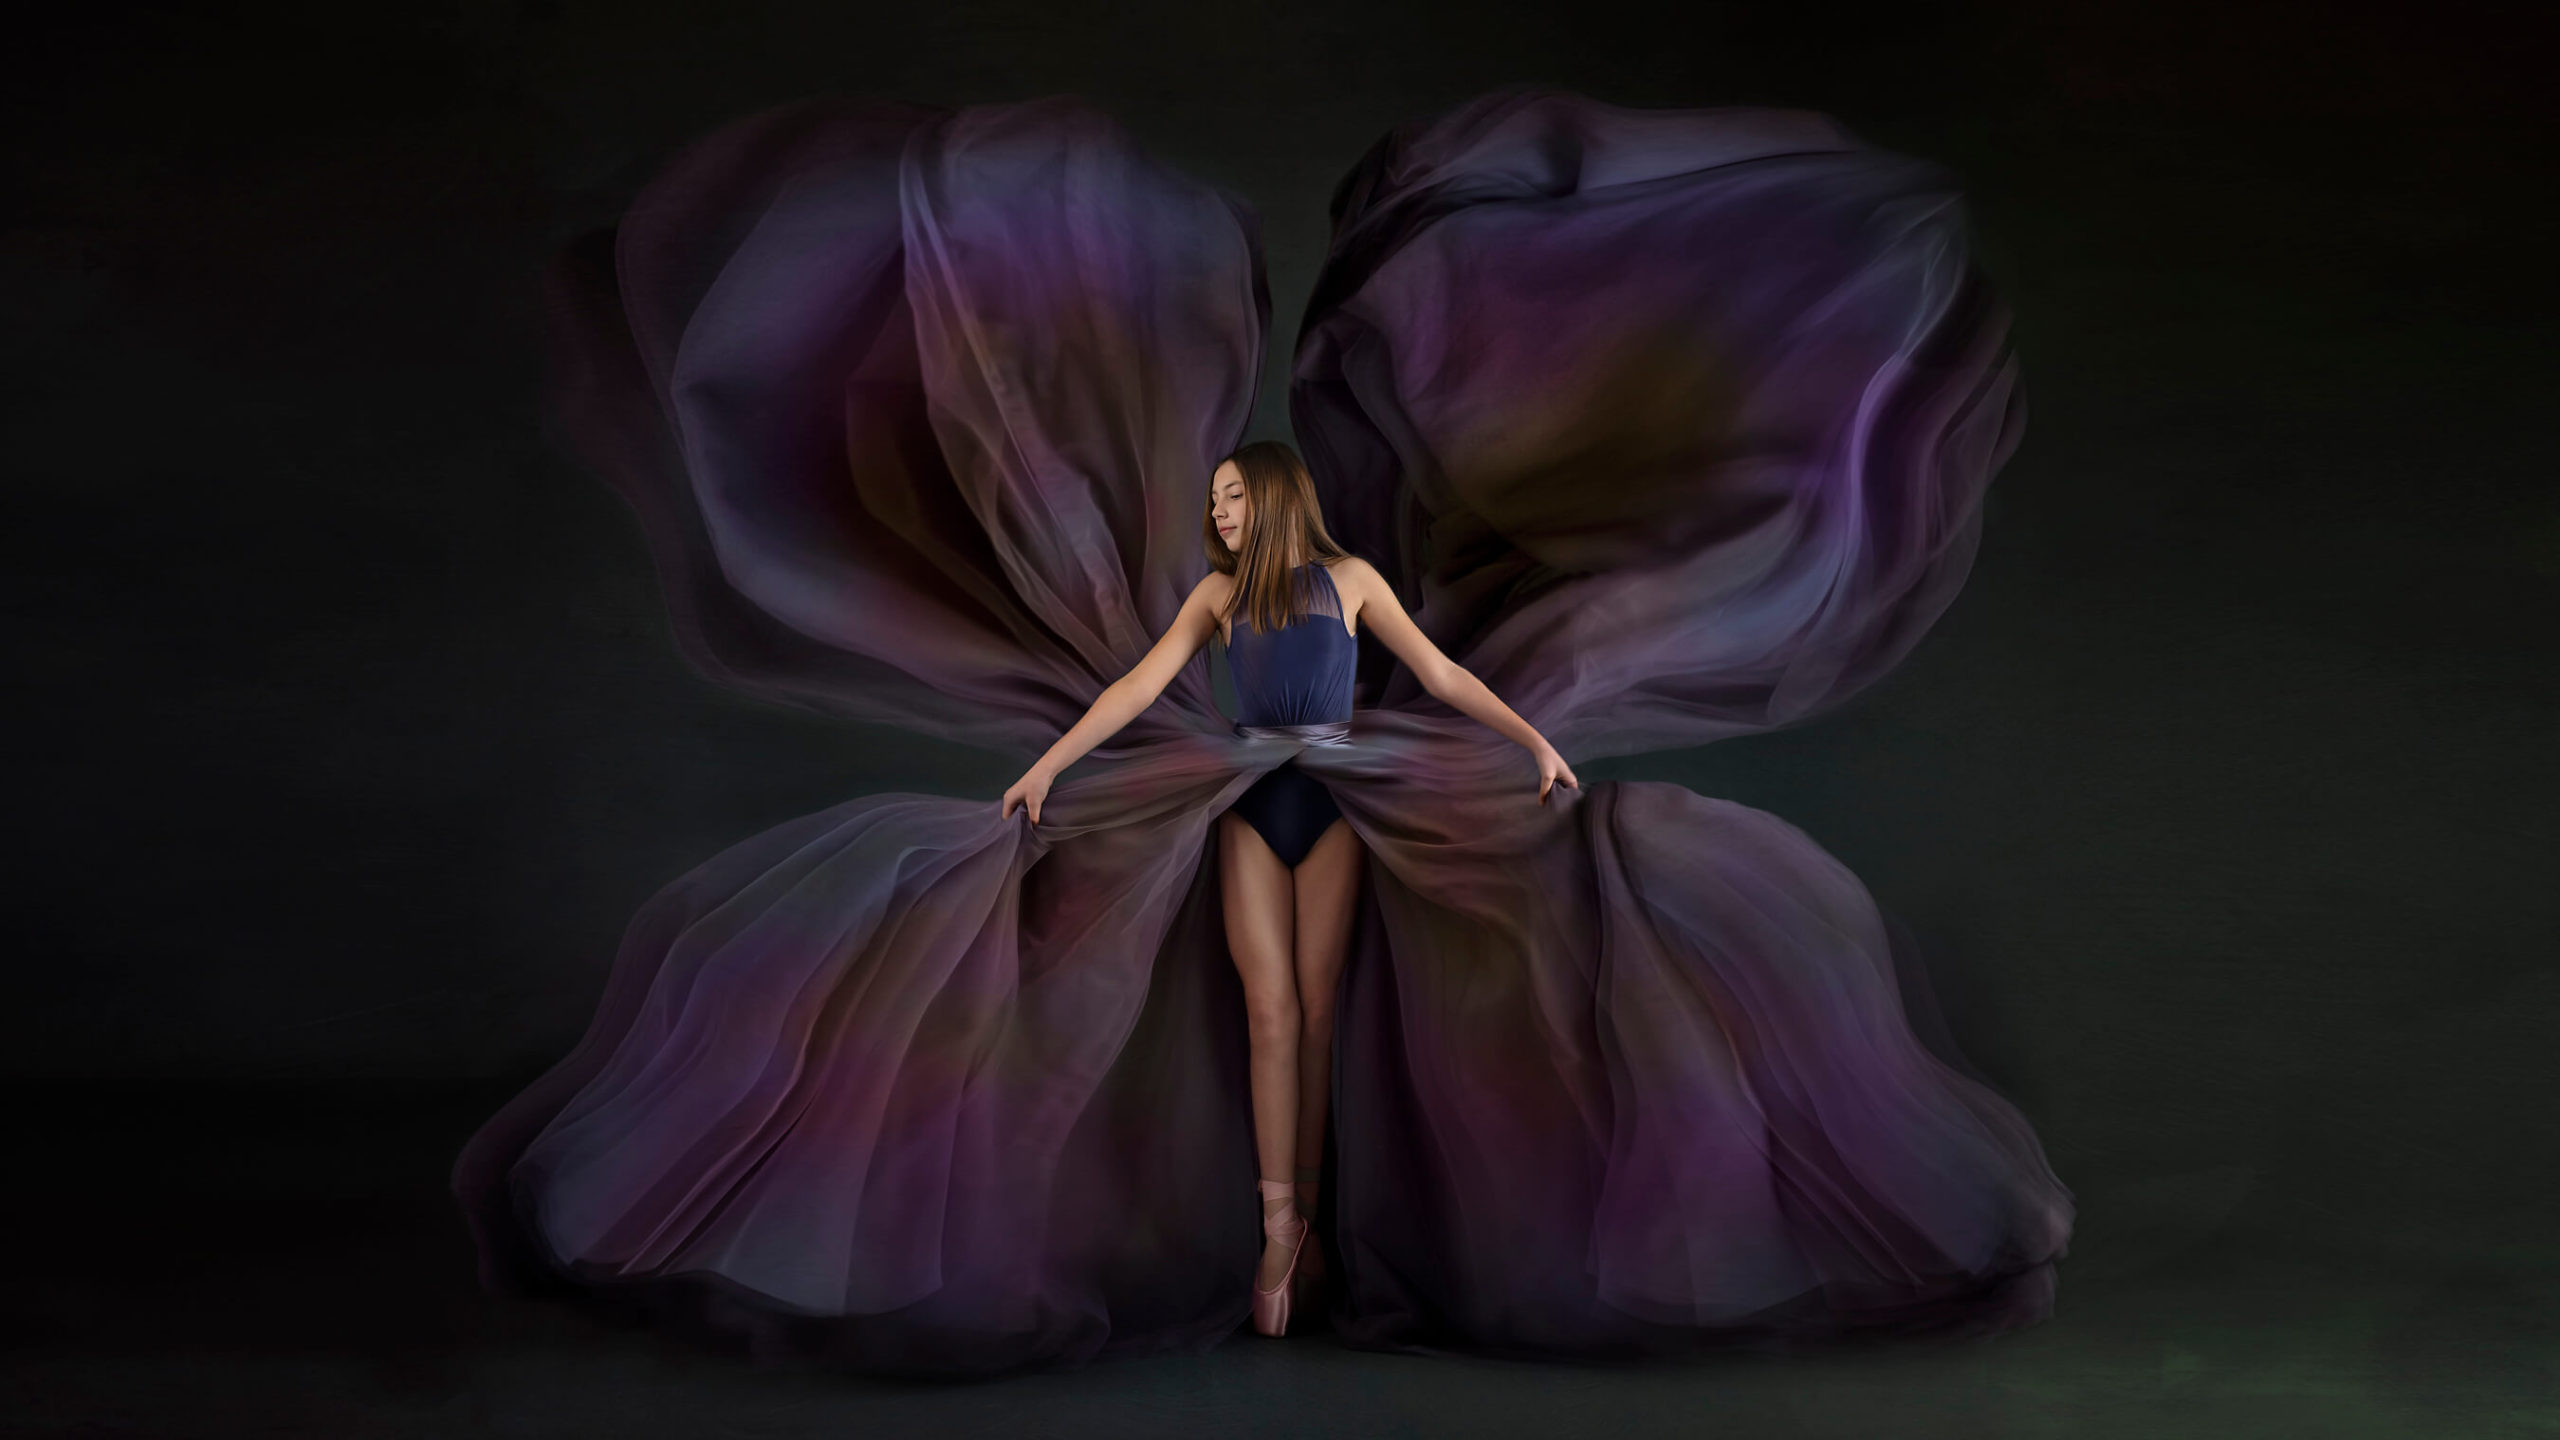 Ballet dancer in purple butterfly shaped dress